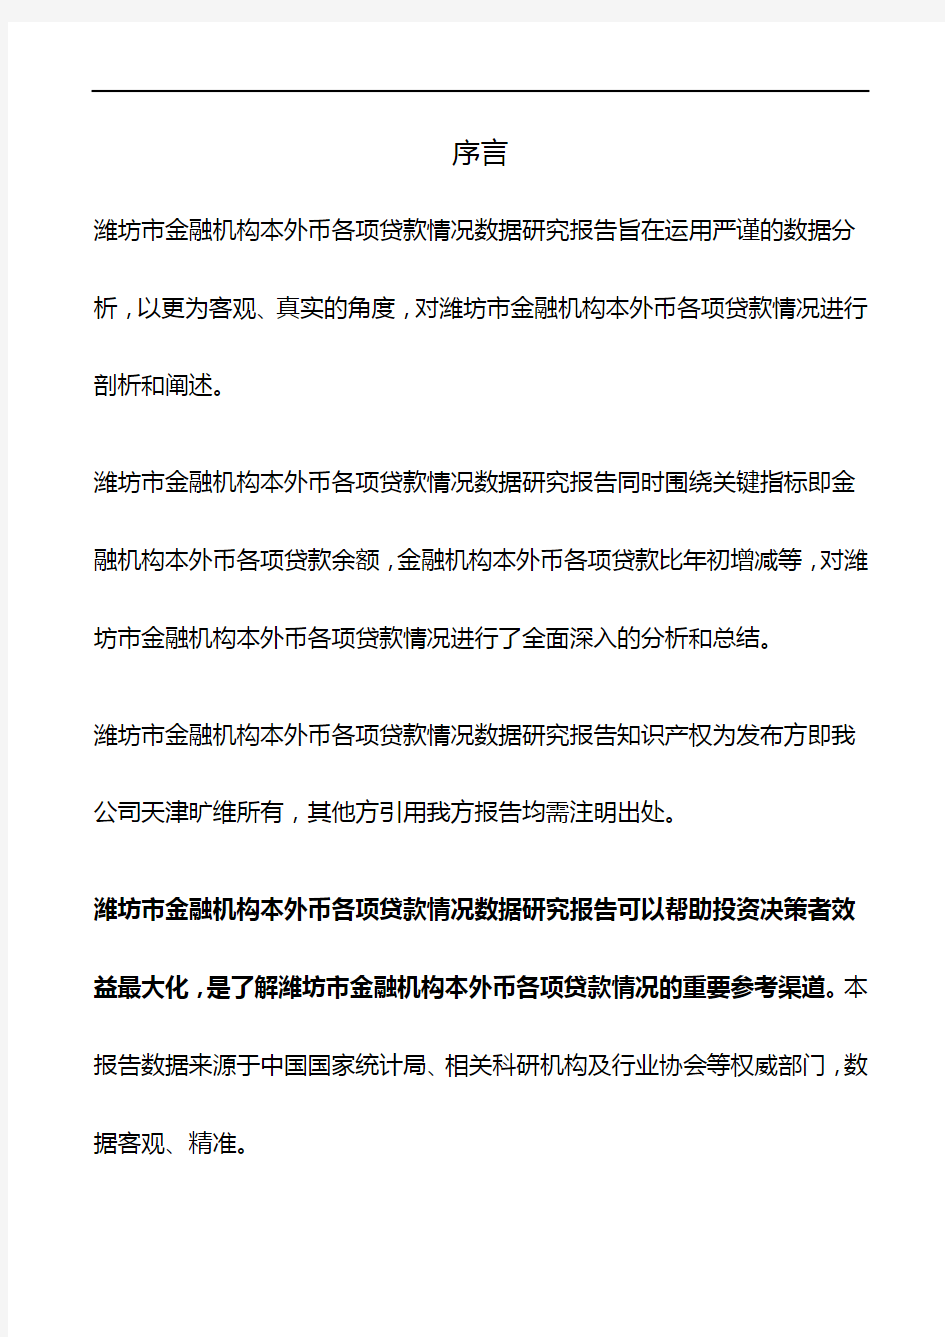 山东省潍坊市金融机构本外币各项贷款情况3年数据研究报告2019版